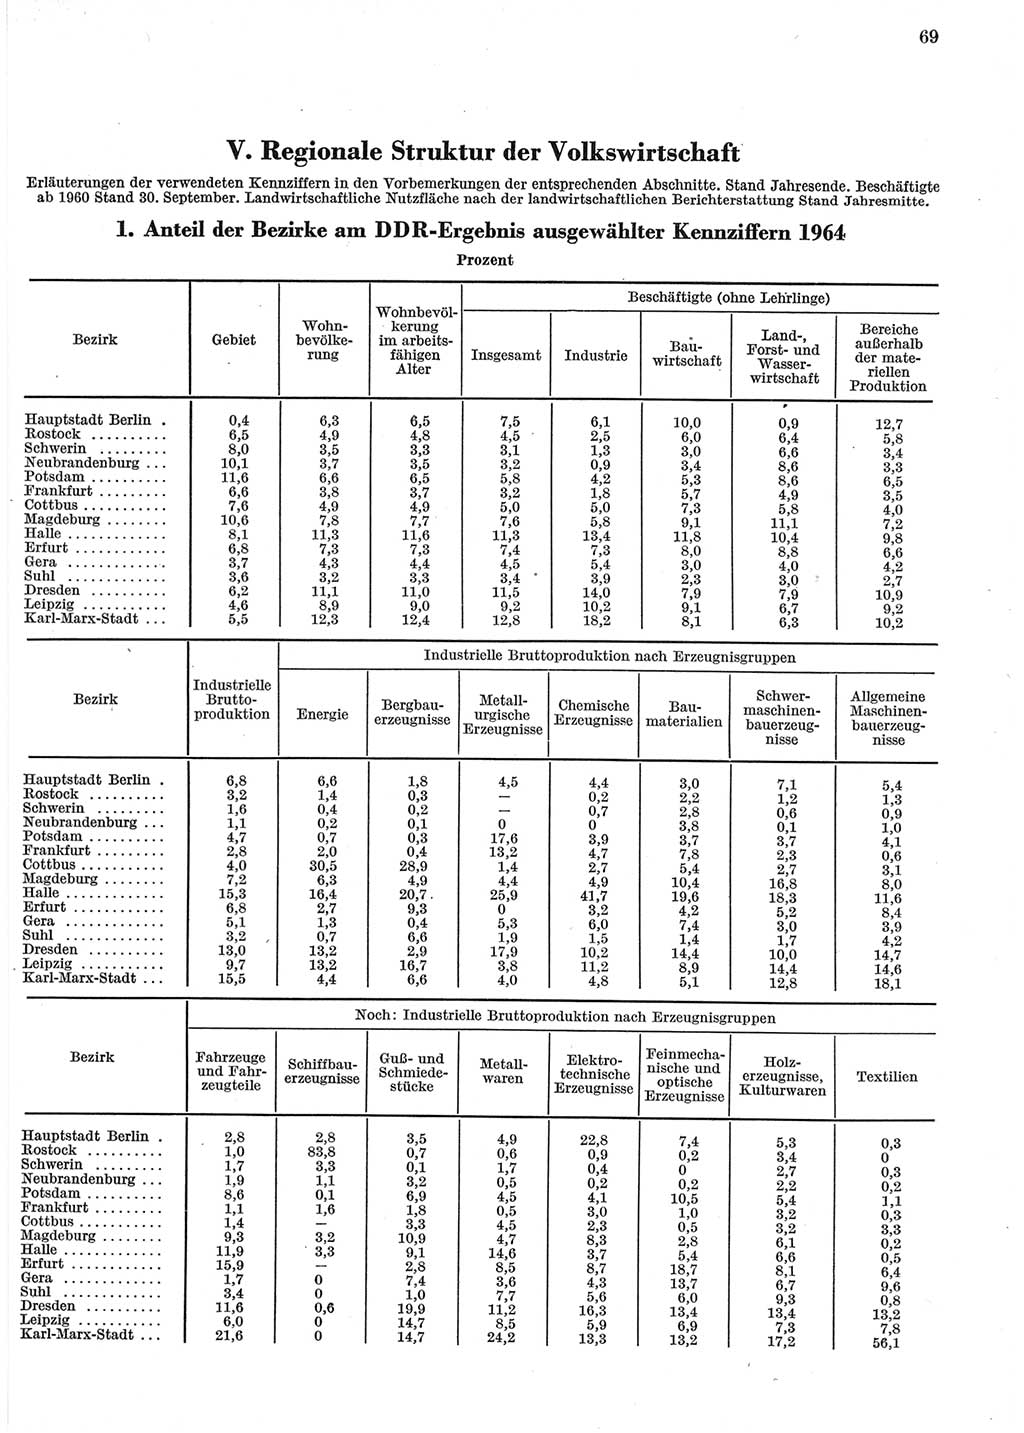 Statistisches Jahrbuch der Deutschen Demokratischen Republik (DDR) 1965, Seite 69 (Stat. Jb. DDR 1965, S. 69)